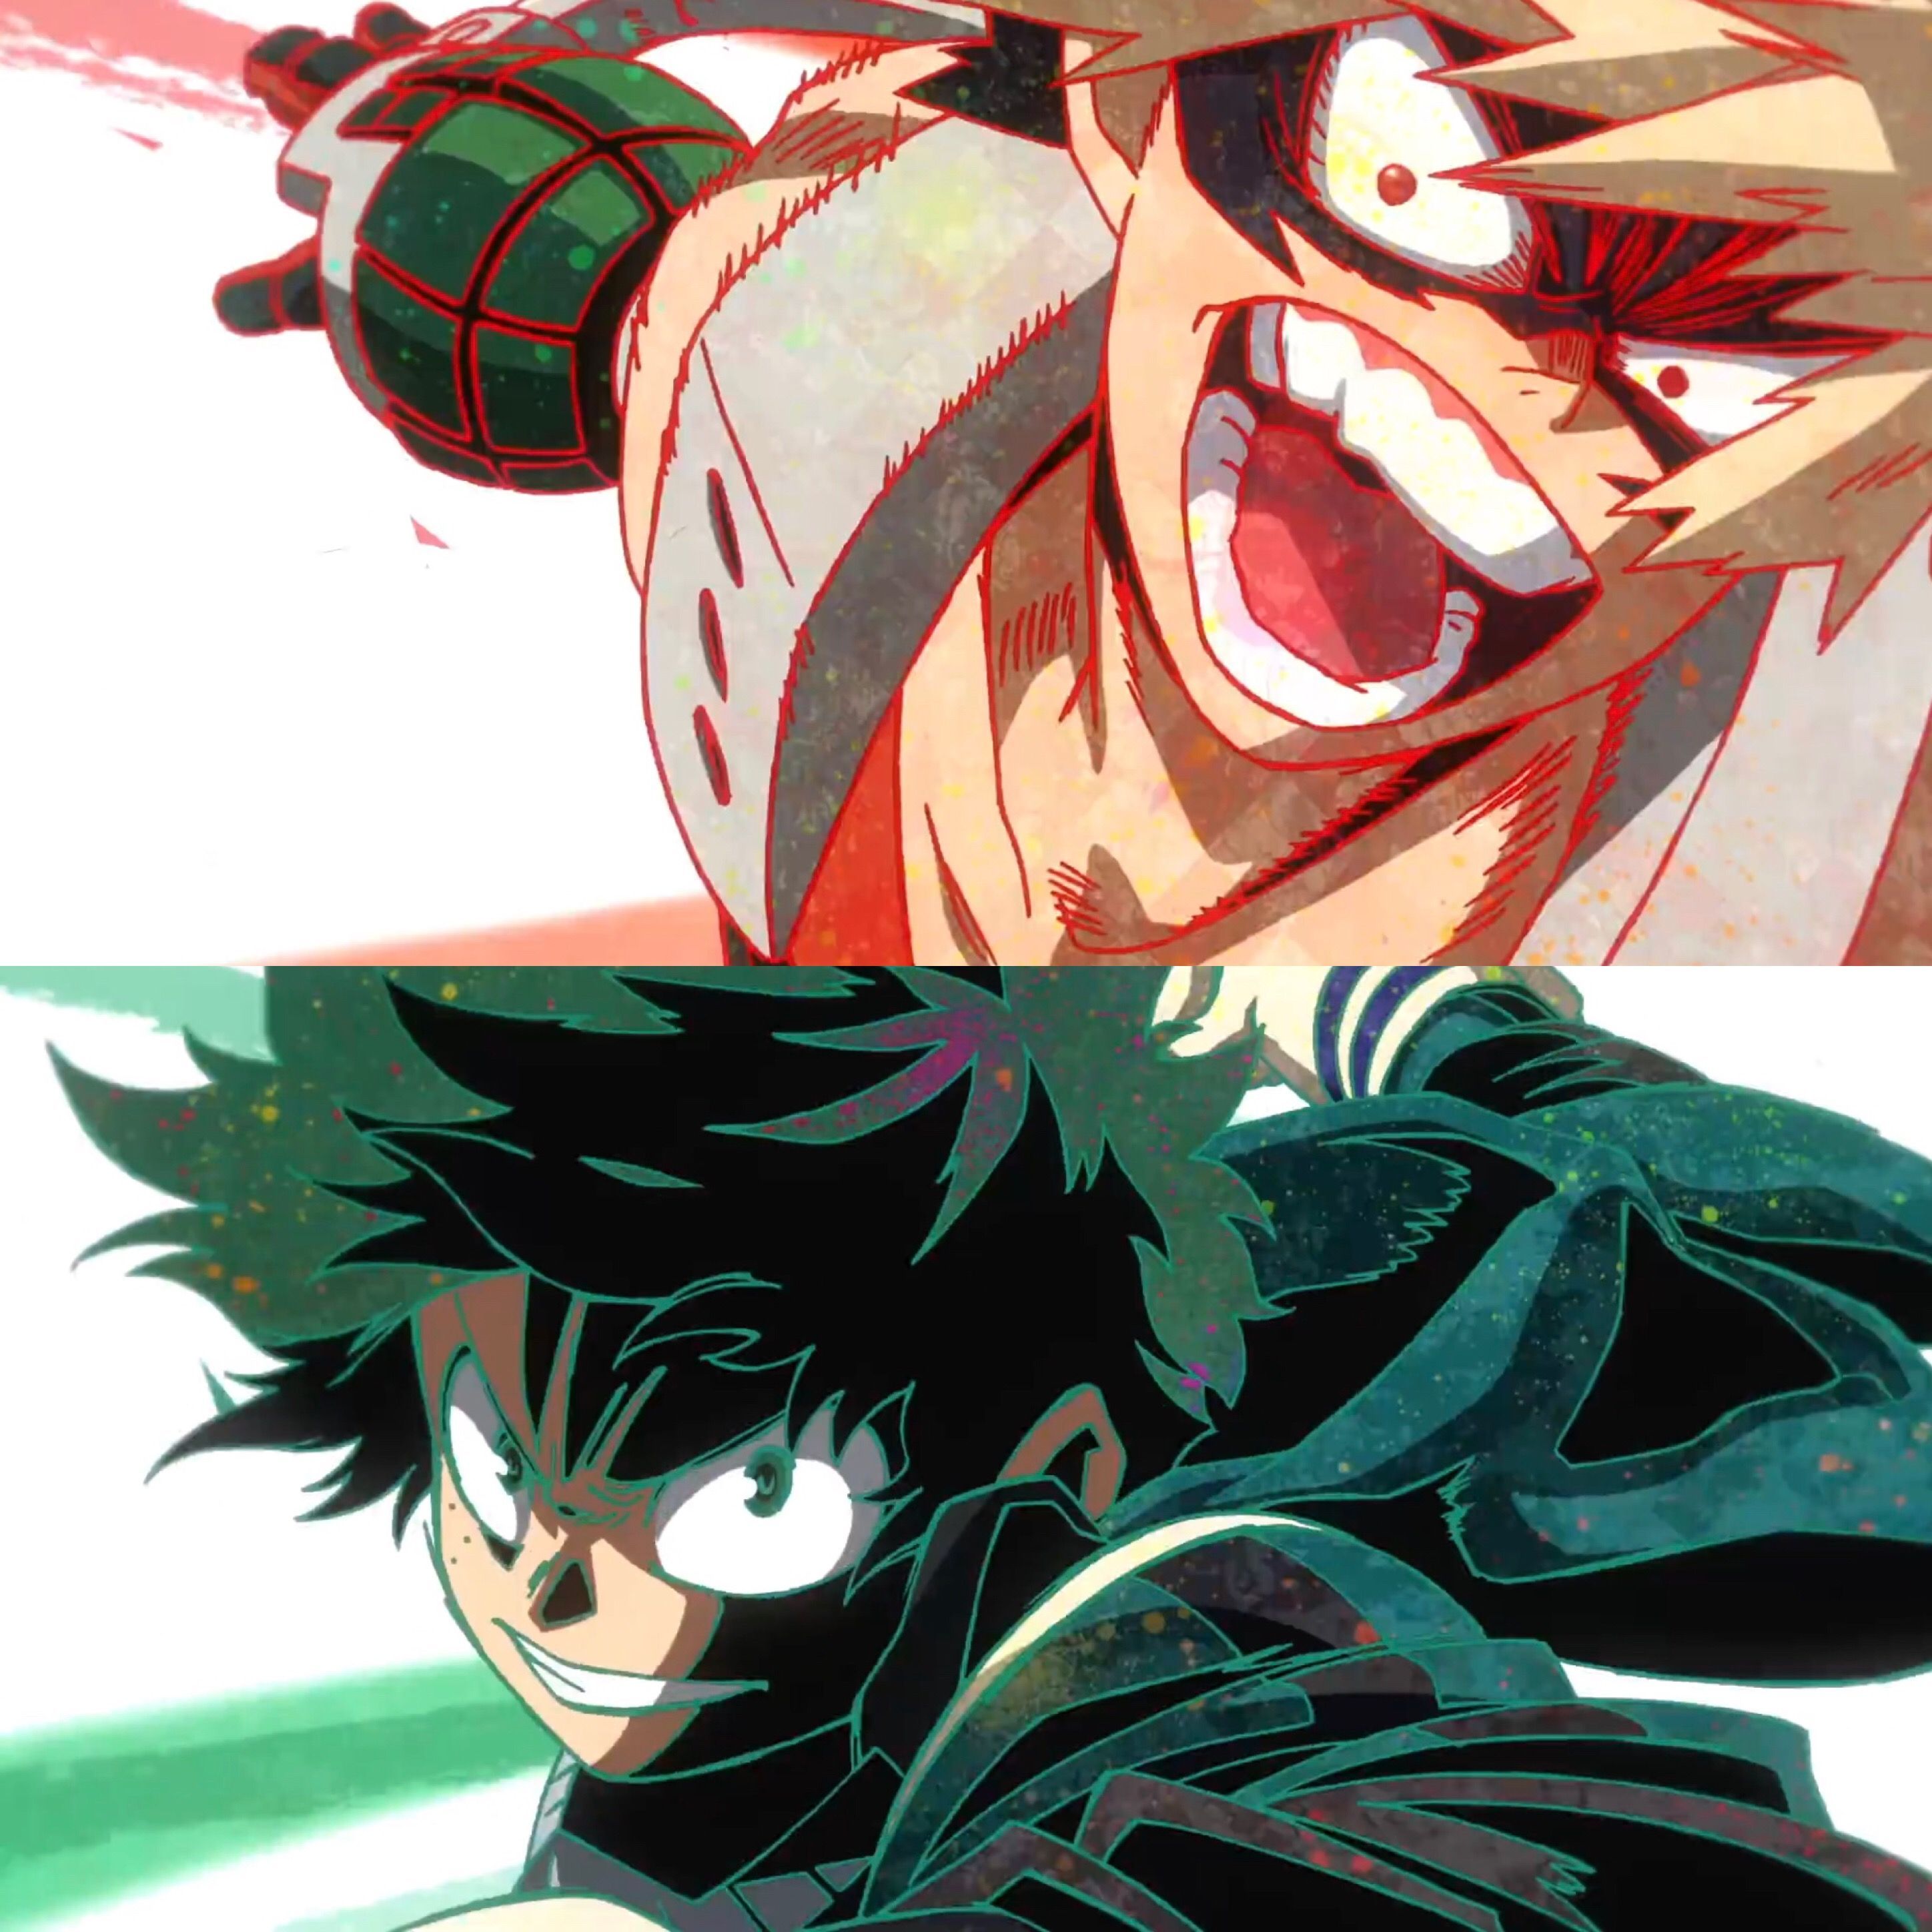 Katsuki Bakugou vs Midoriya Izuku.. Boku no Hero Academia. Anime, Hero wallpaper, My hero